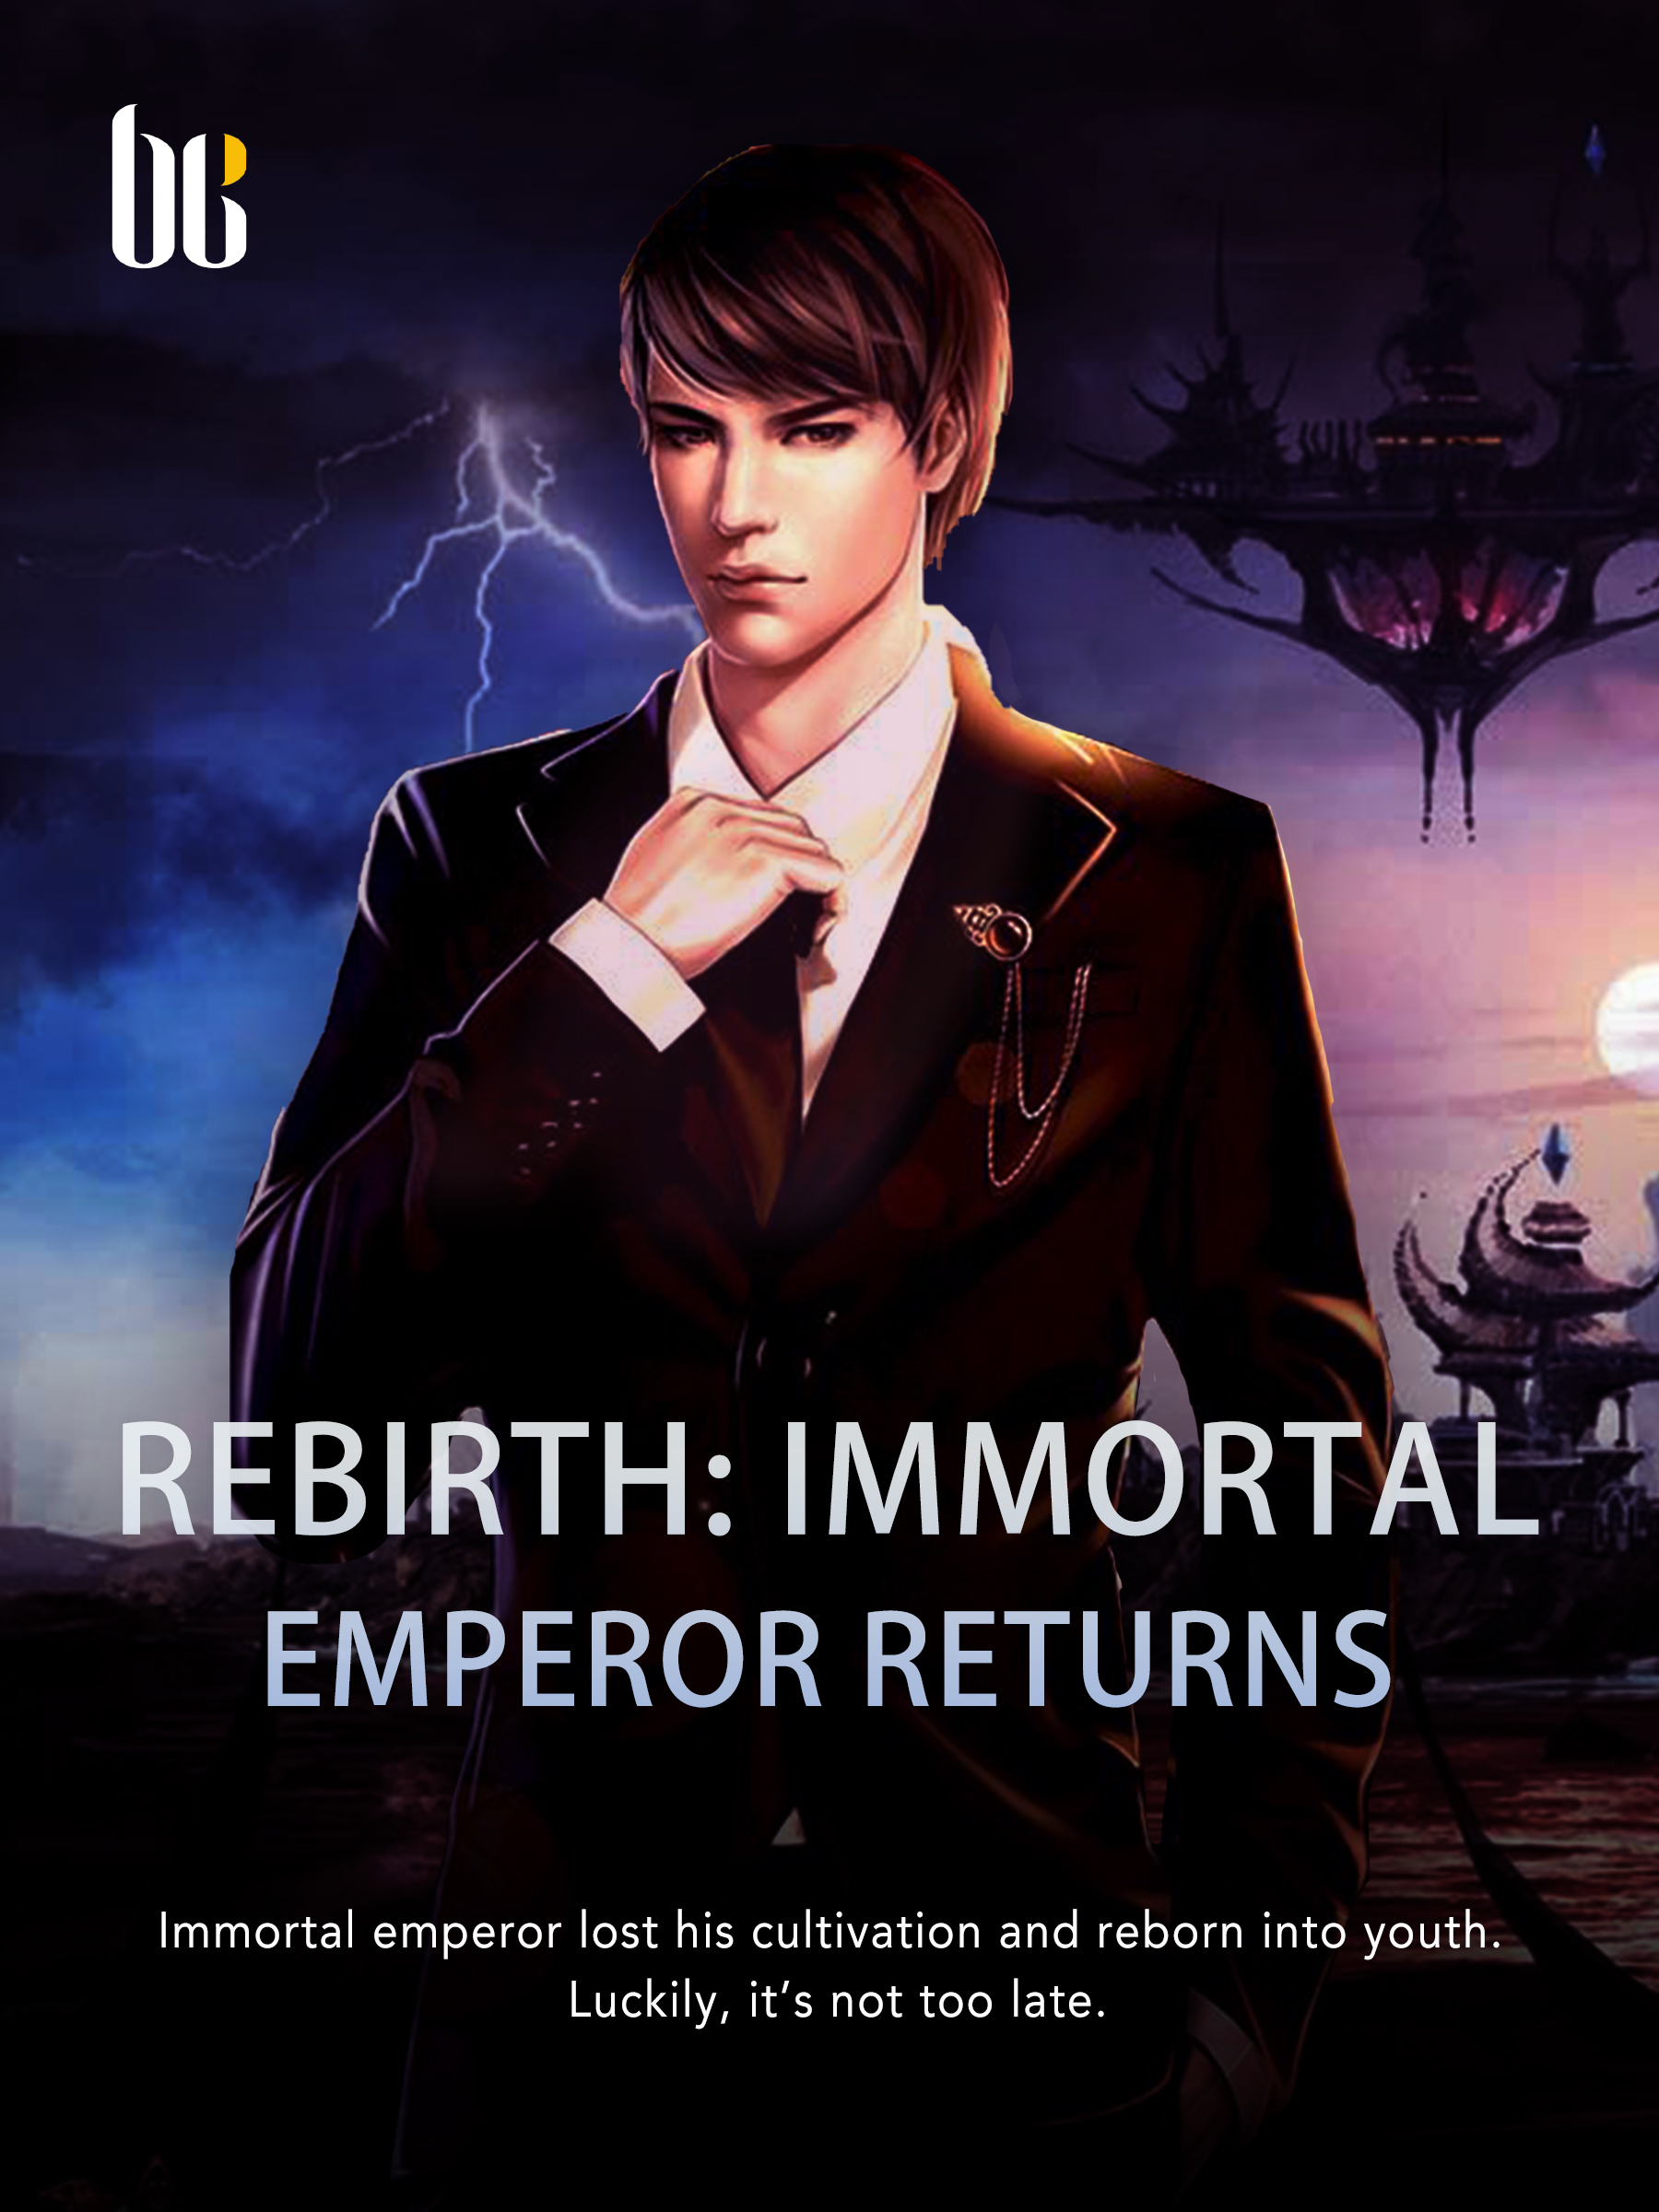 Read Rebirth Of The Urban Immortal Emperor - God_of_light - WebNovel